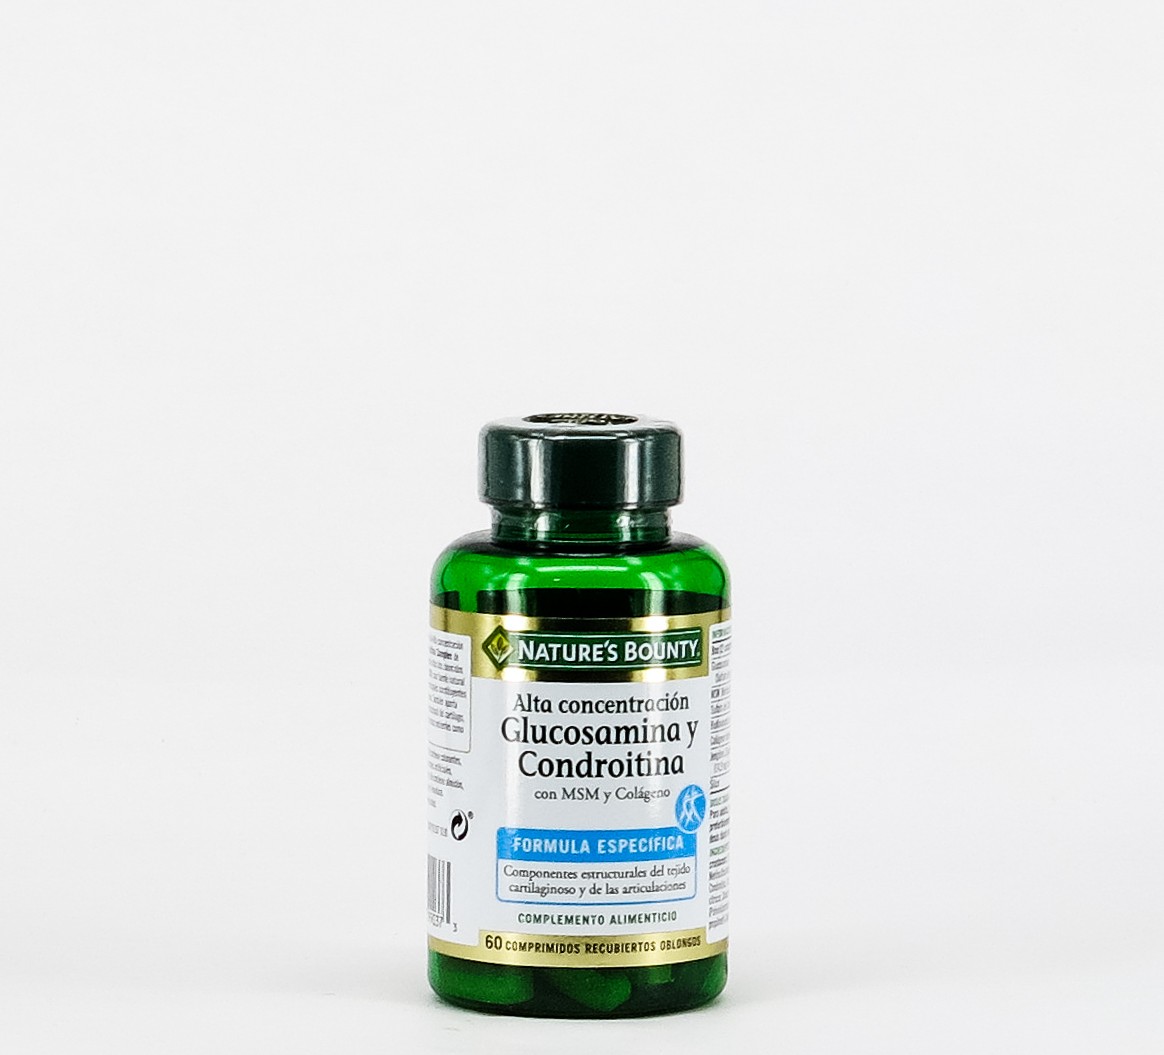 Comprar Nature's Bounty Glucosamina Condroitina + MSM + Colágeno, 60 Comp  al mejor precio